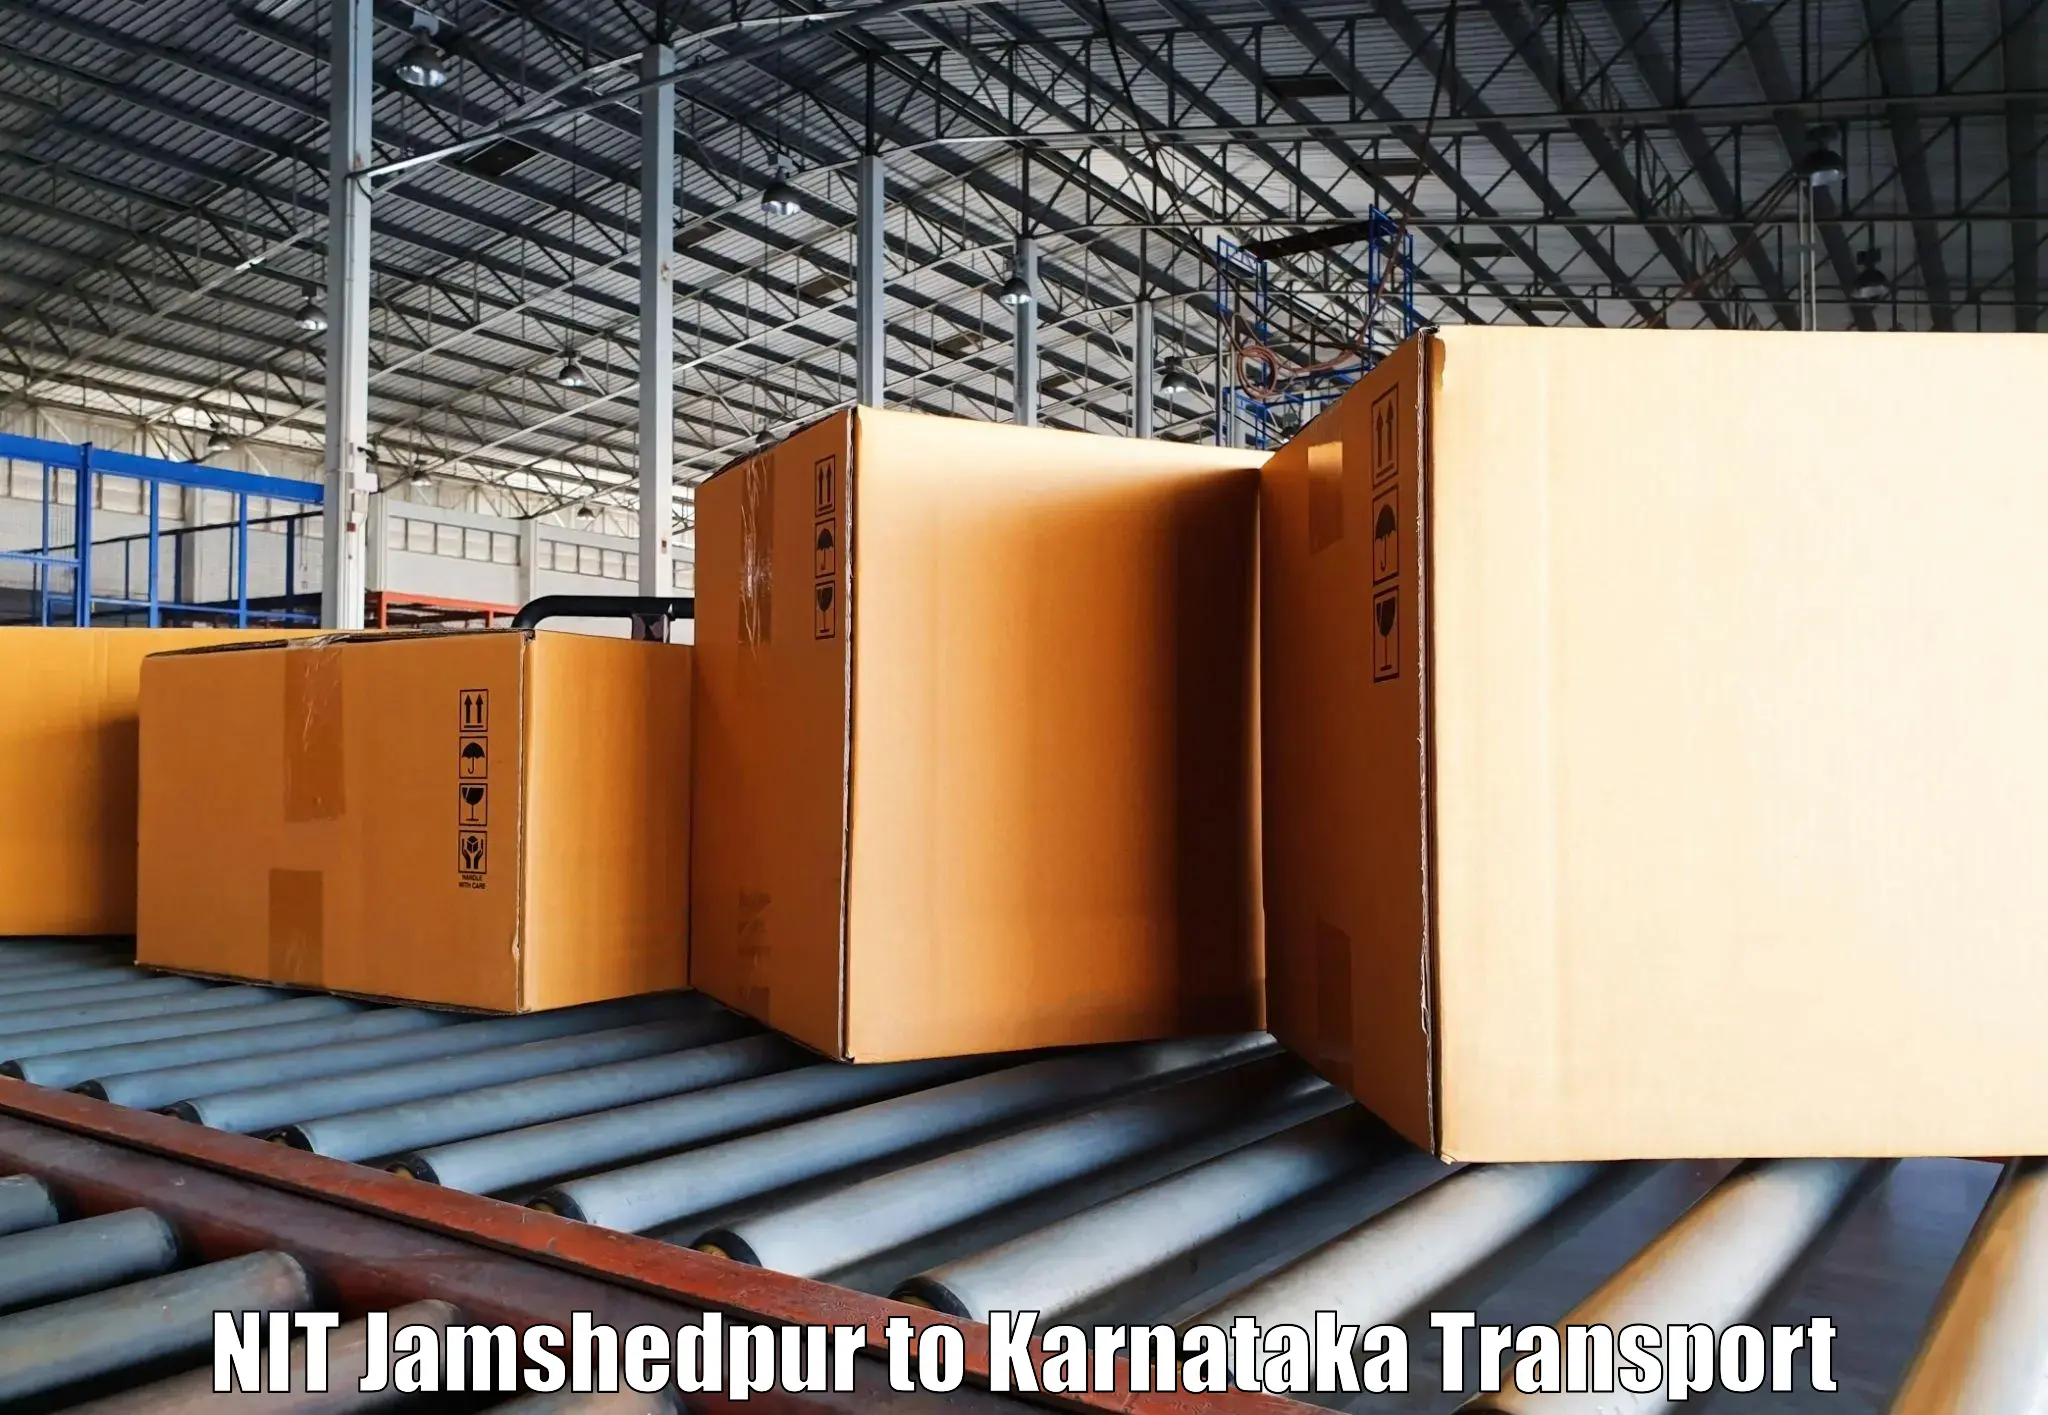 Online transport service NIT Jamshedpur to Hanur